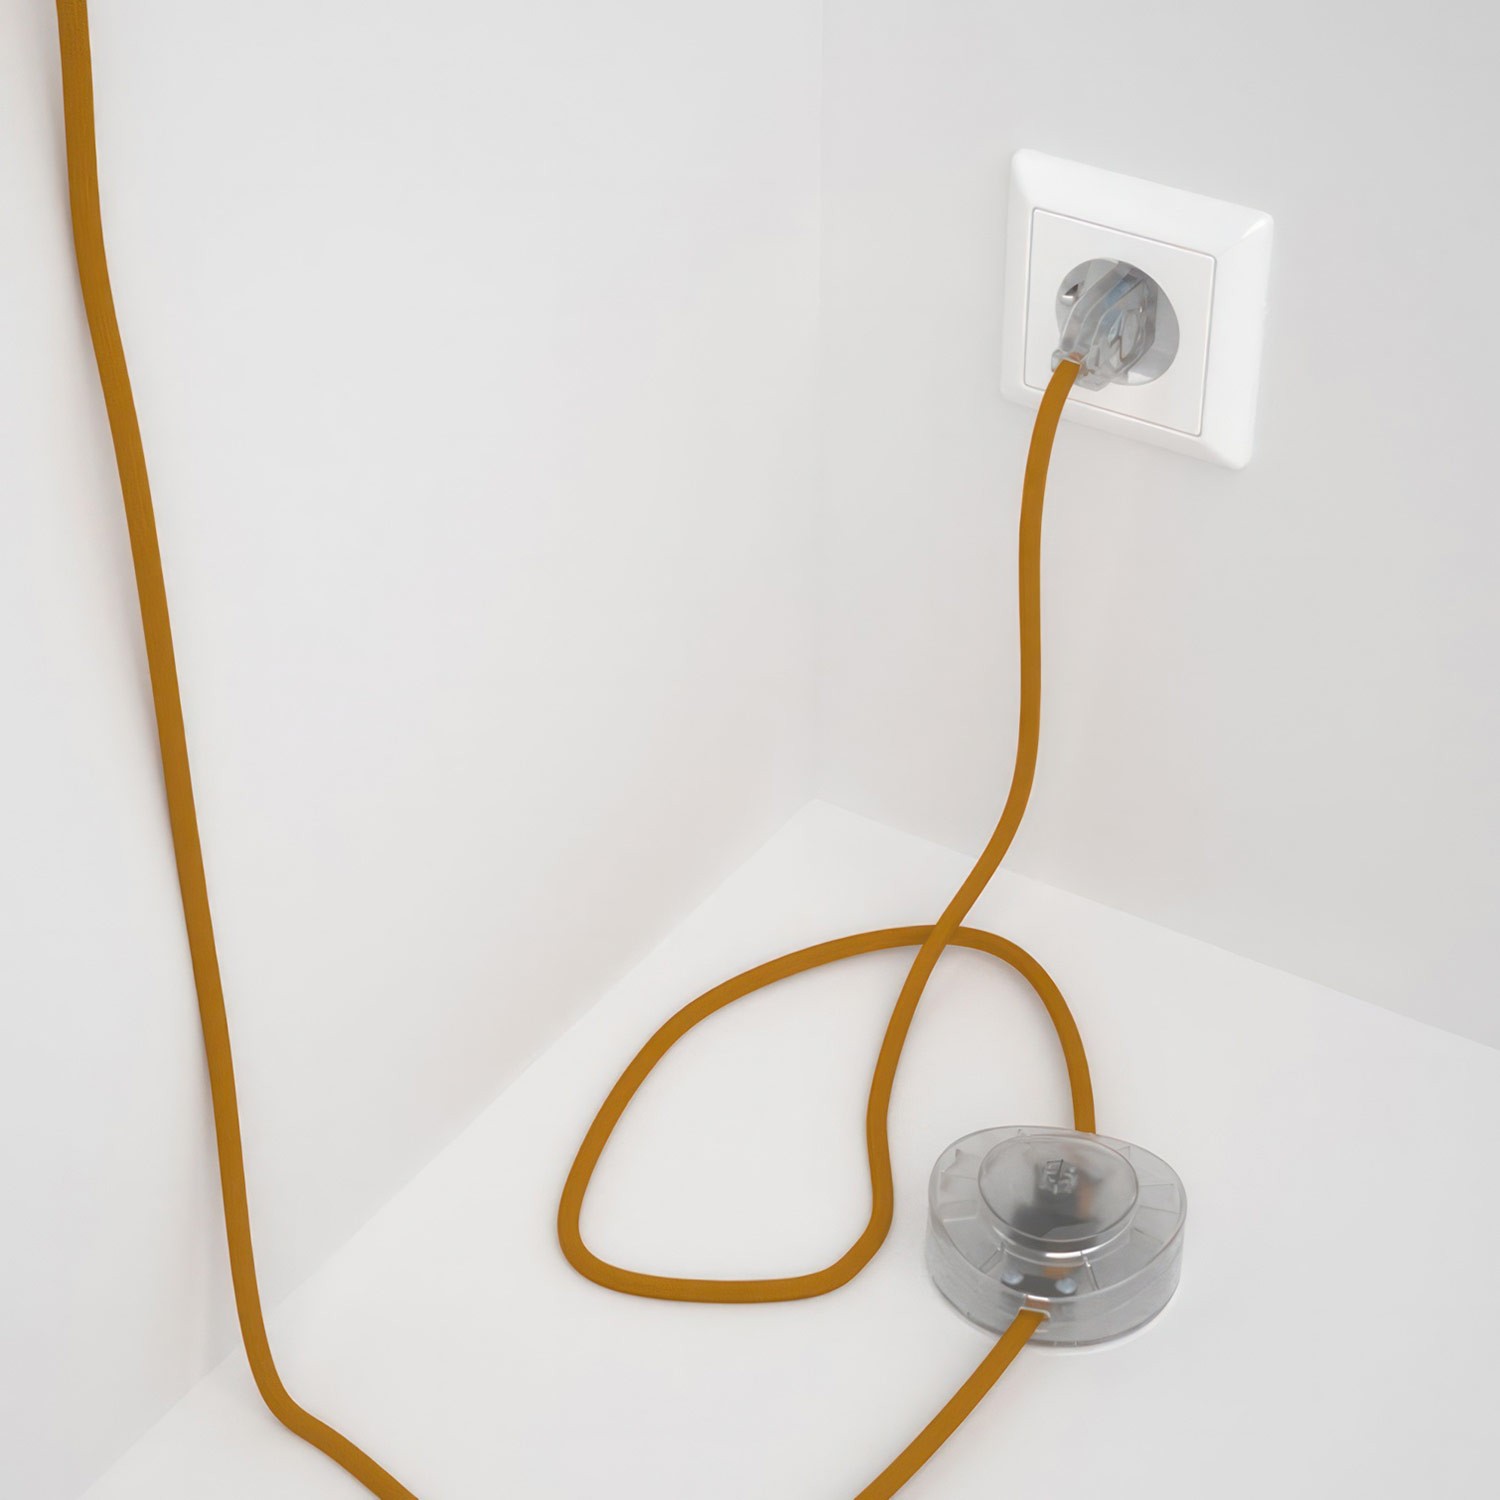 Cableado para lámpara de pie, cable RM25 Efecto Seda Mostaza 3 m. Elige tu el color de la clavija y del interruptor!